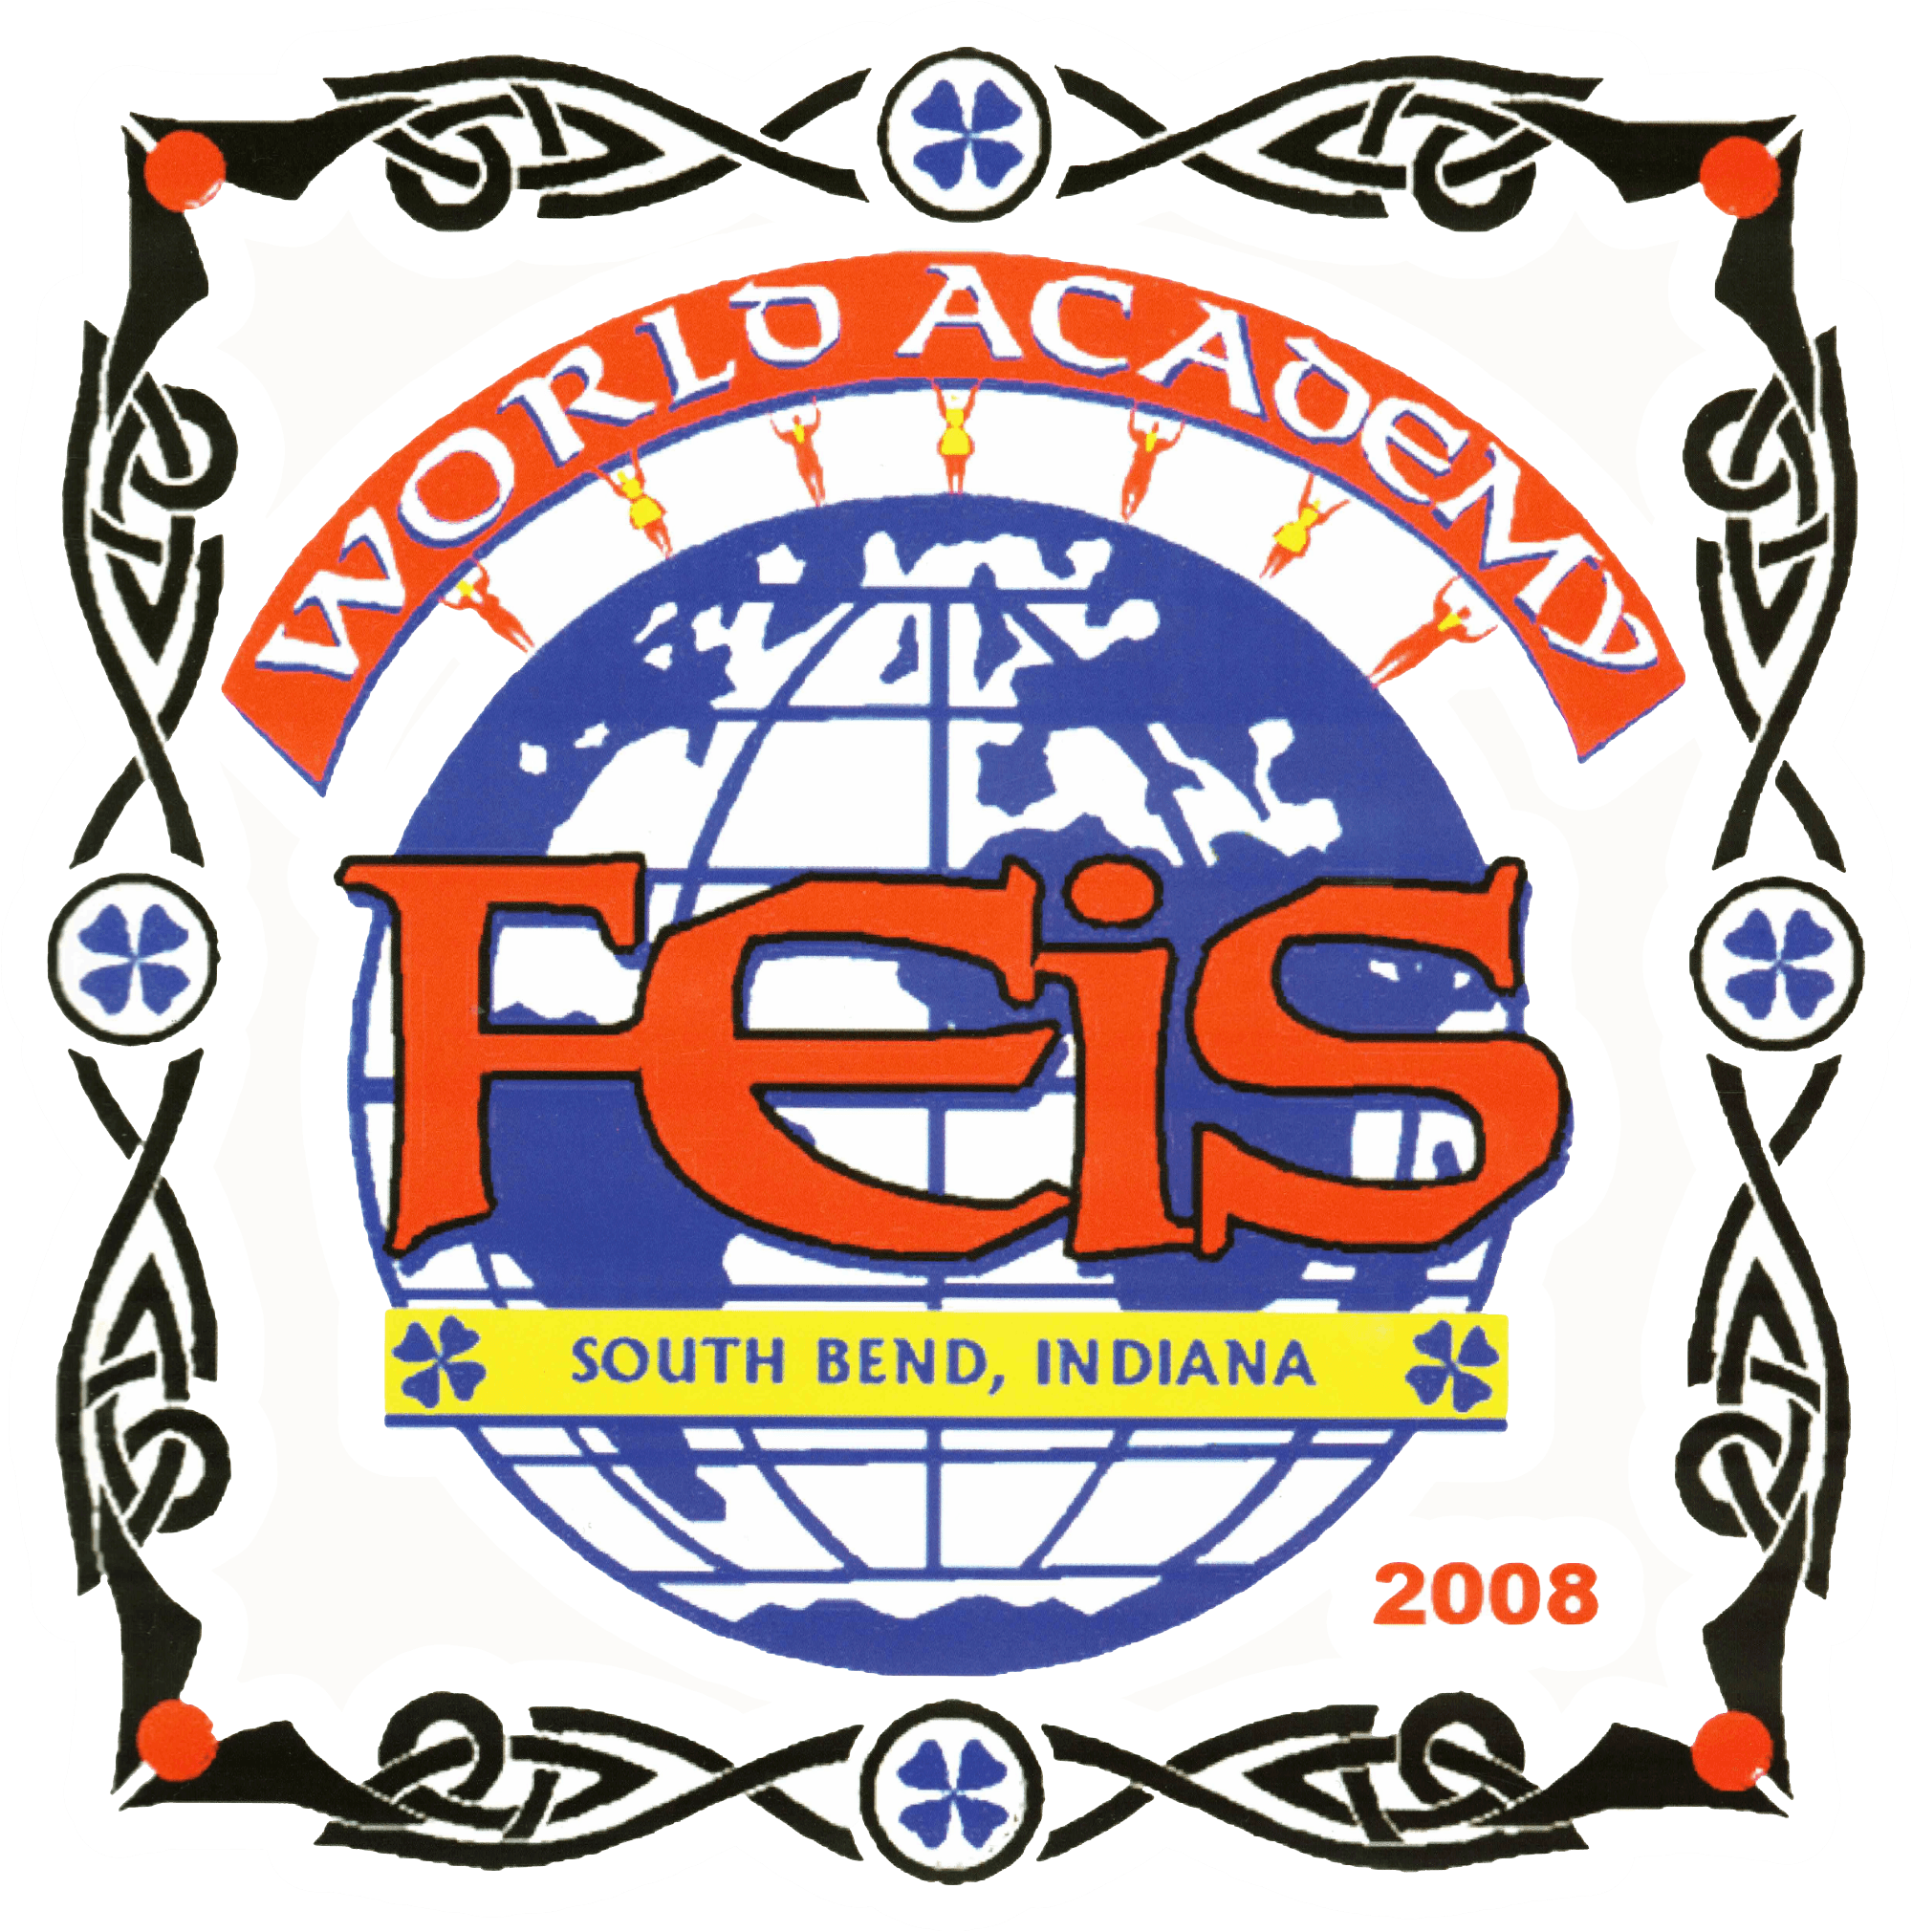 logo for World Academy Feis